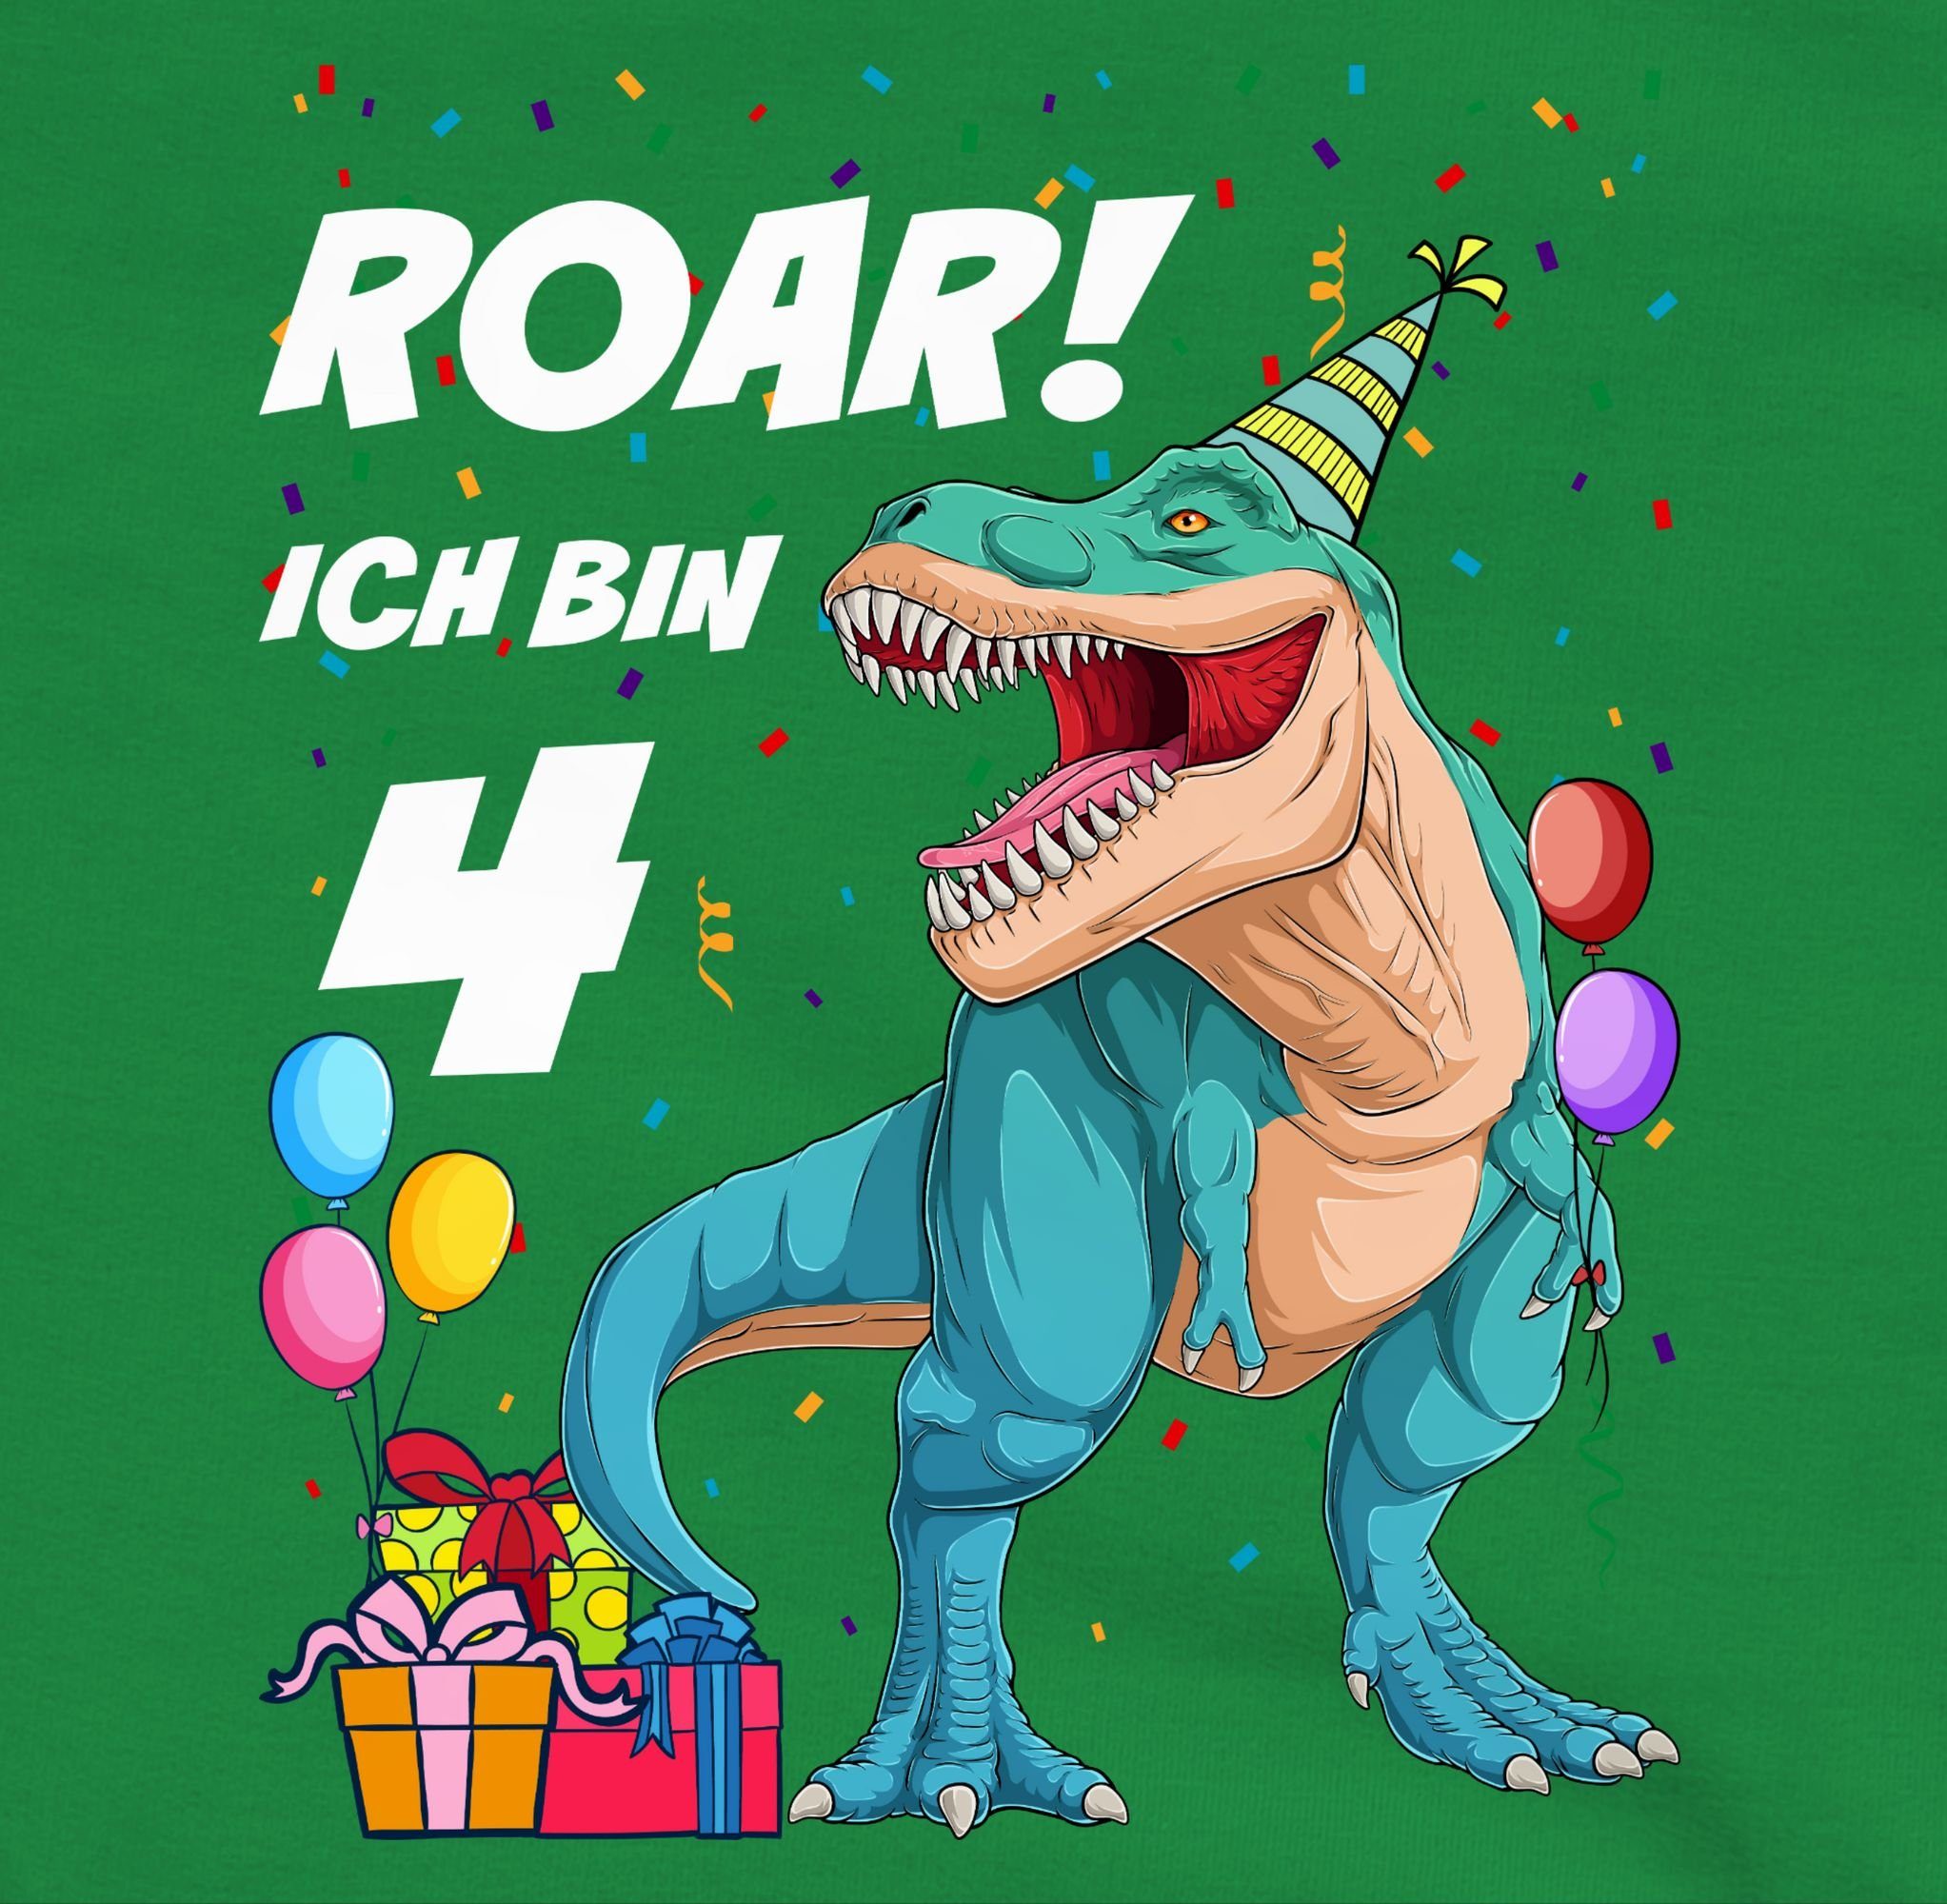 4. bin Dino Jahre Sweatshirt Geburtstag Shirtracer Dinosaurier Ich 2 T-Rex - 4 Grün